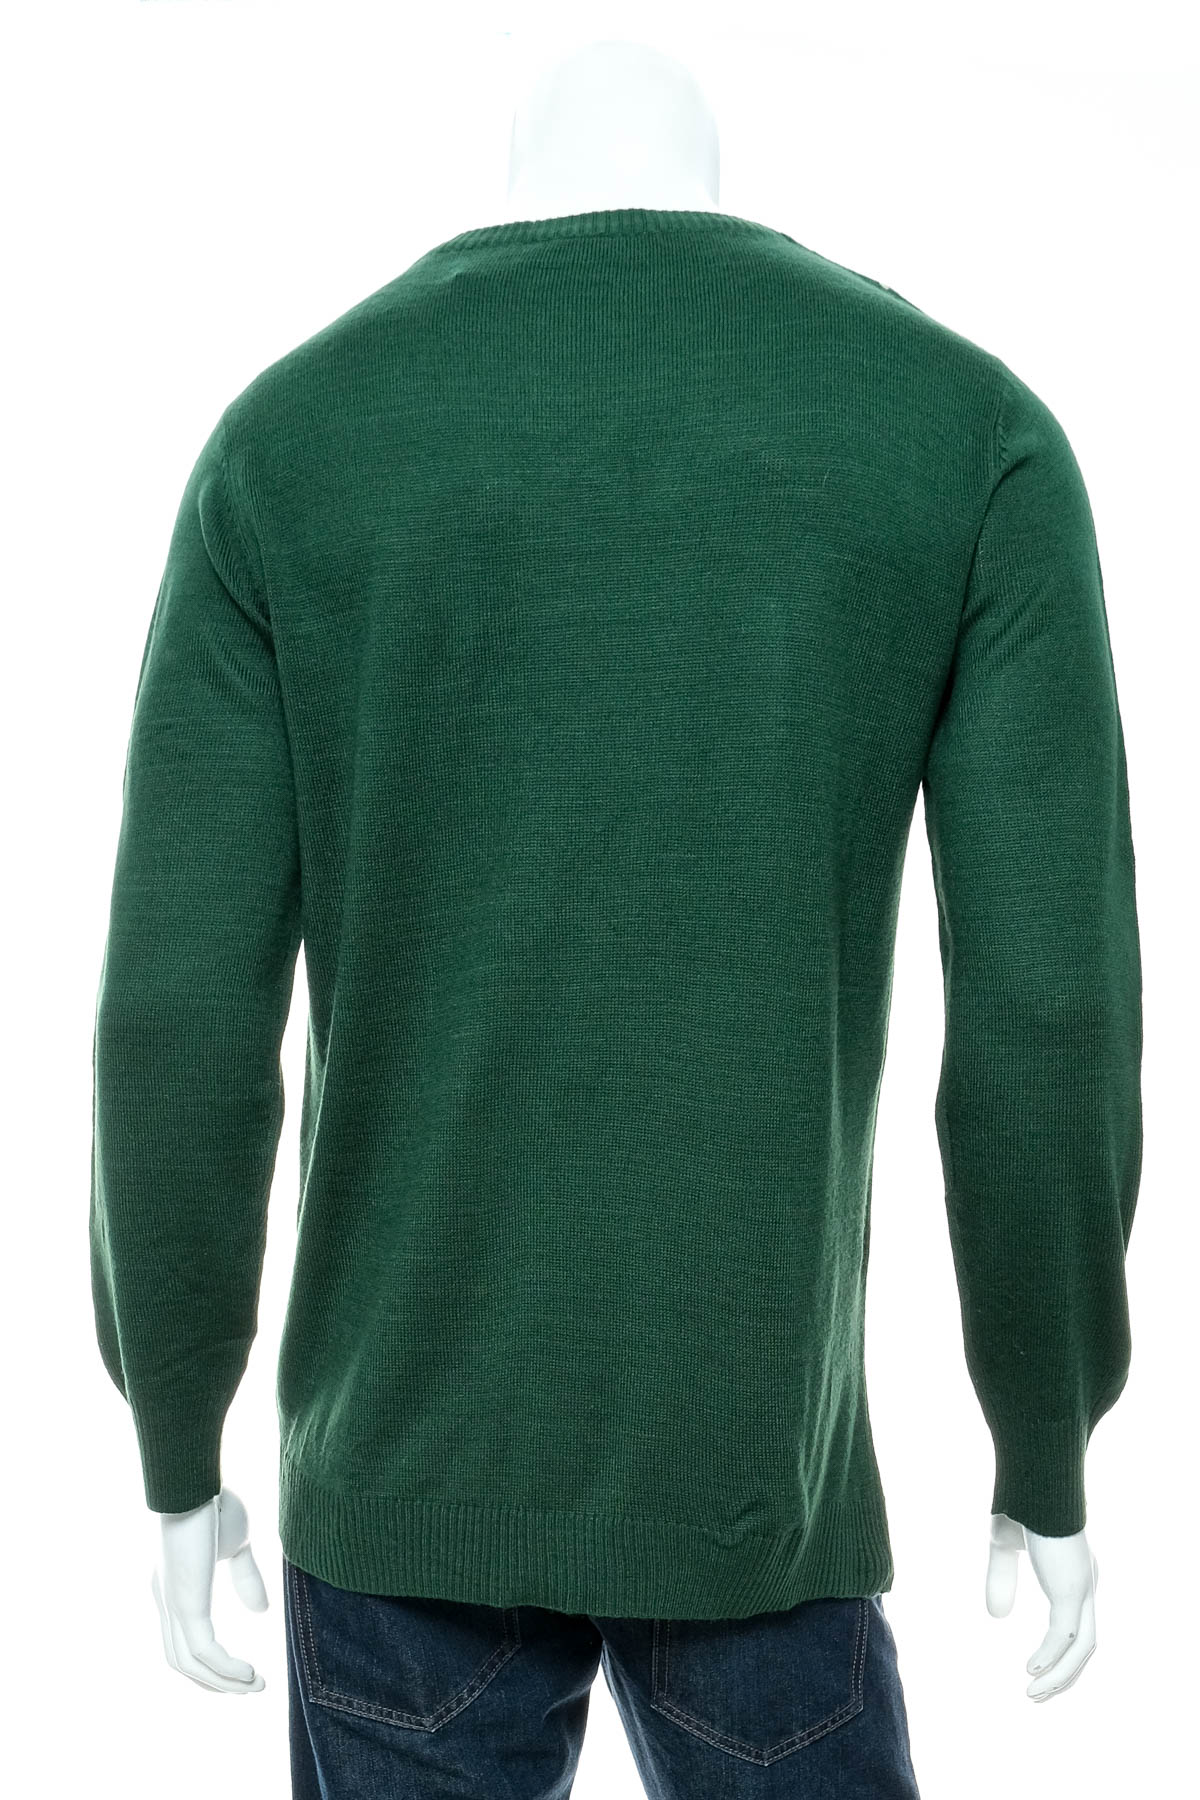 Men's sweater - Ripple Junction - 1